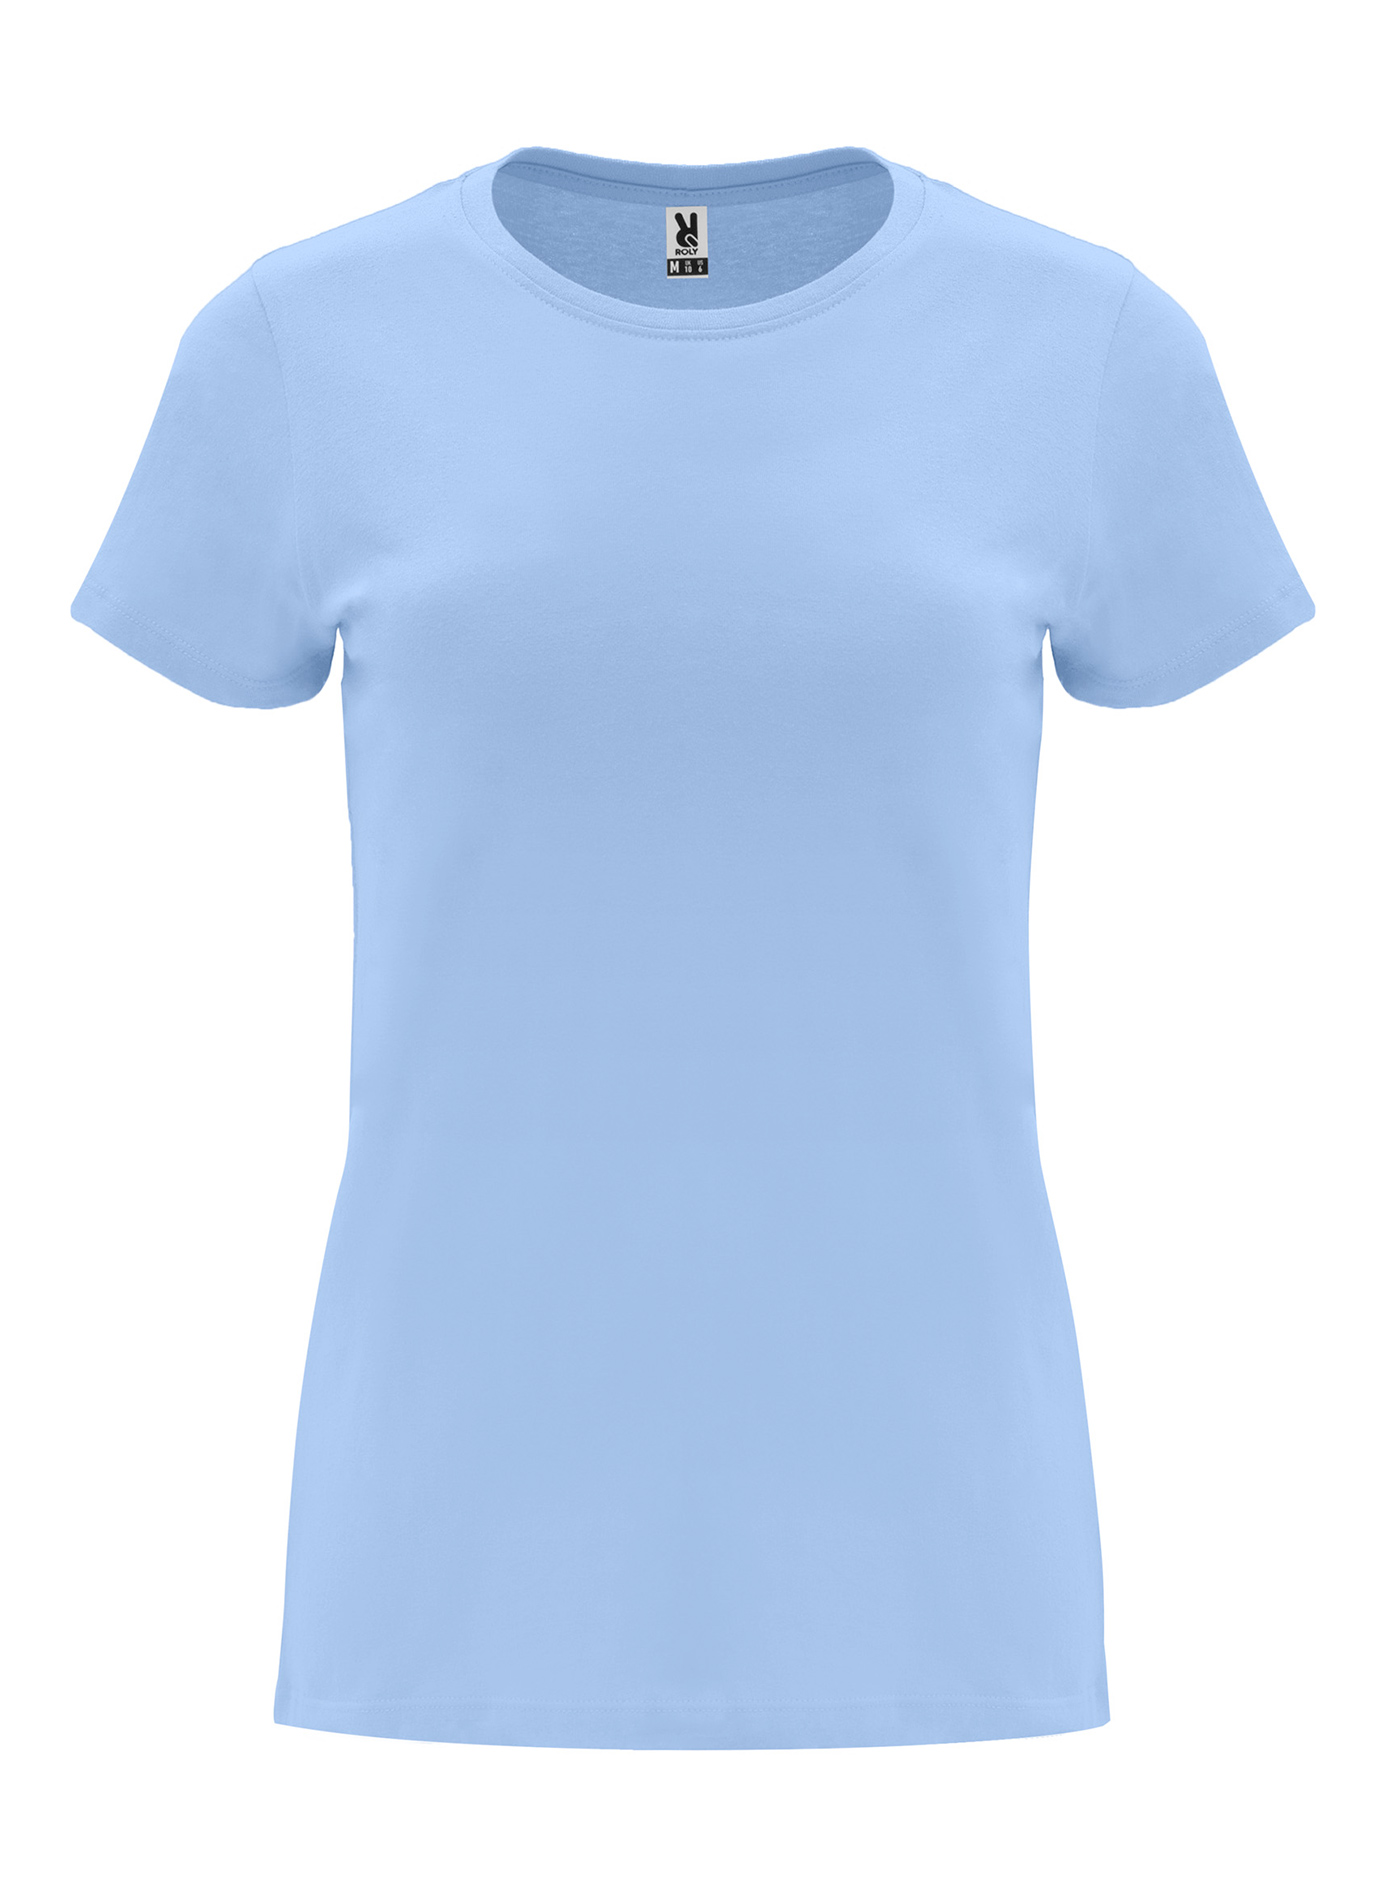 Dámské tričko Roly Capri - Blankytně modrá XL